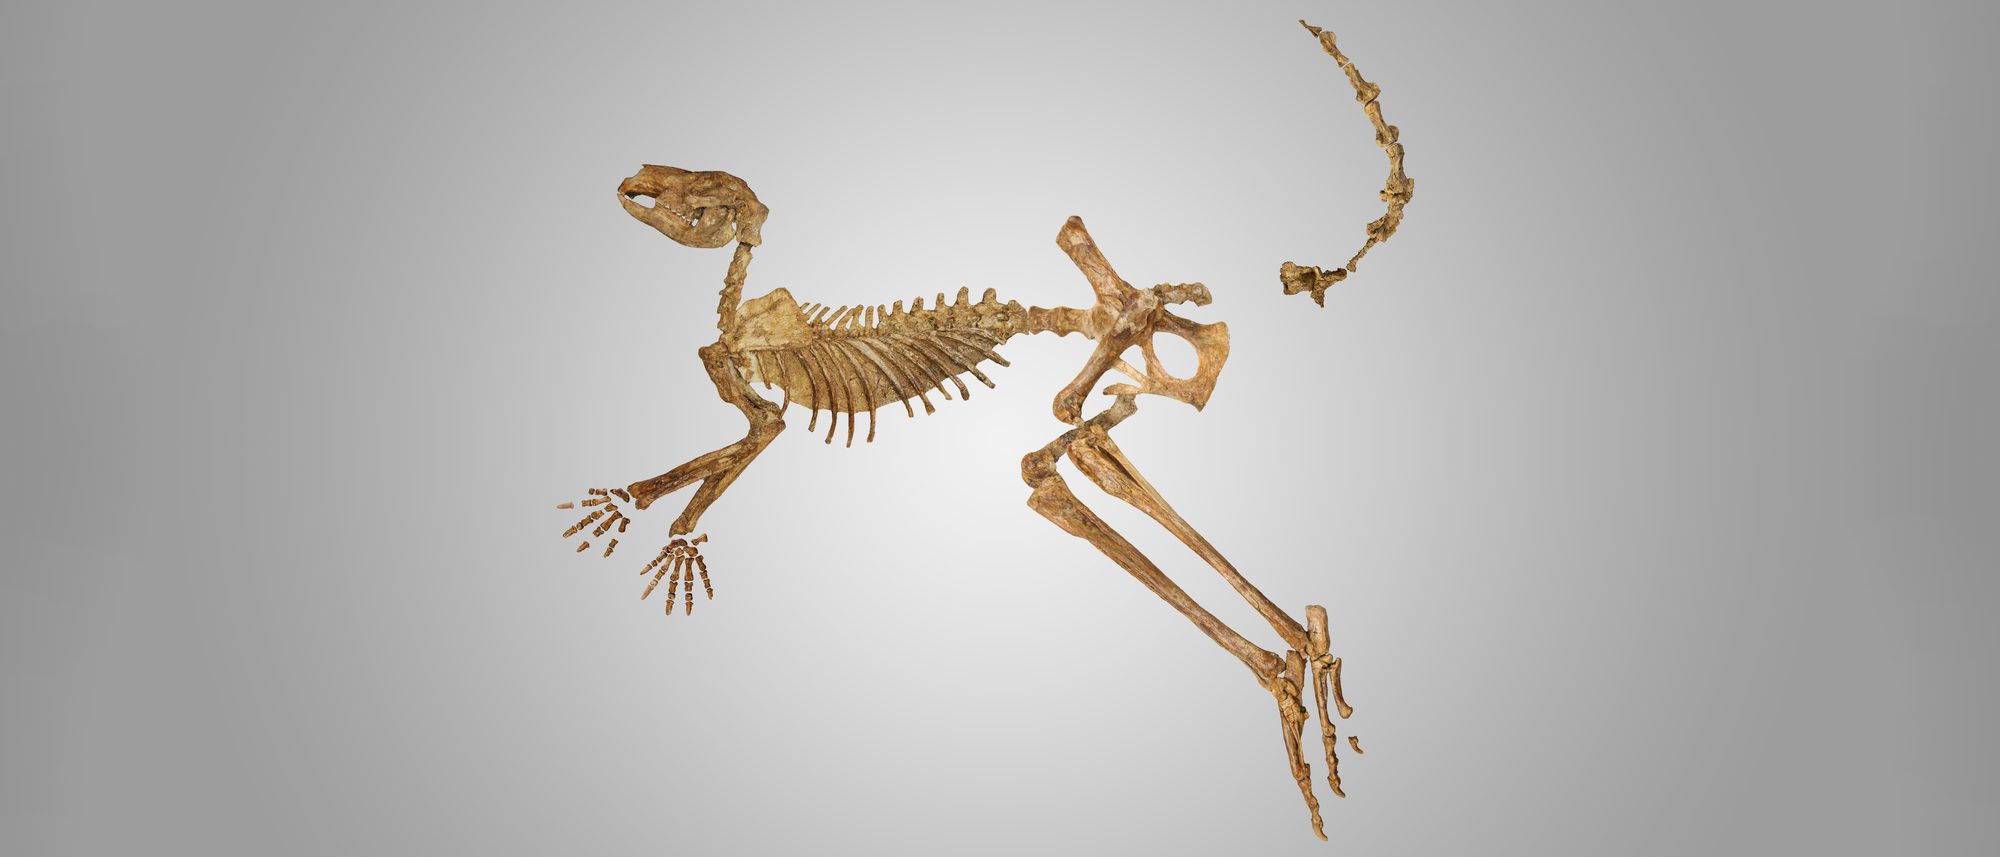 Fast vollständiges Skelett eines ausgestorbenen Riesenkängurus vor leicht grauem Hintergrund. Nur wenige Knochen fehlen.